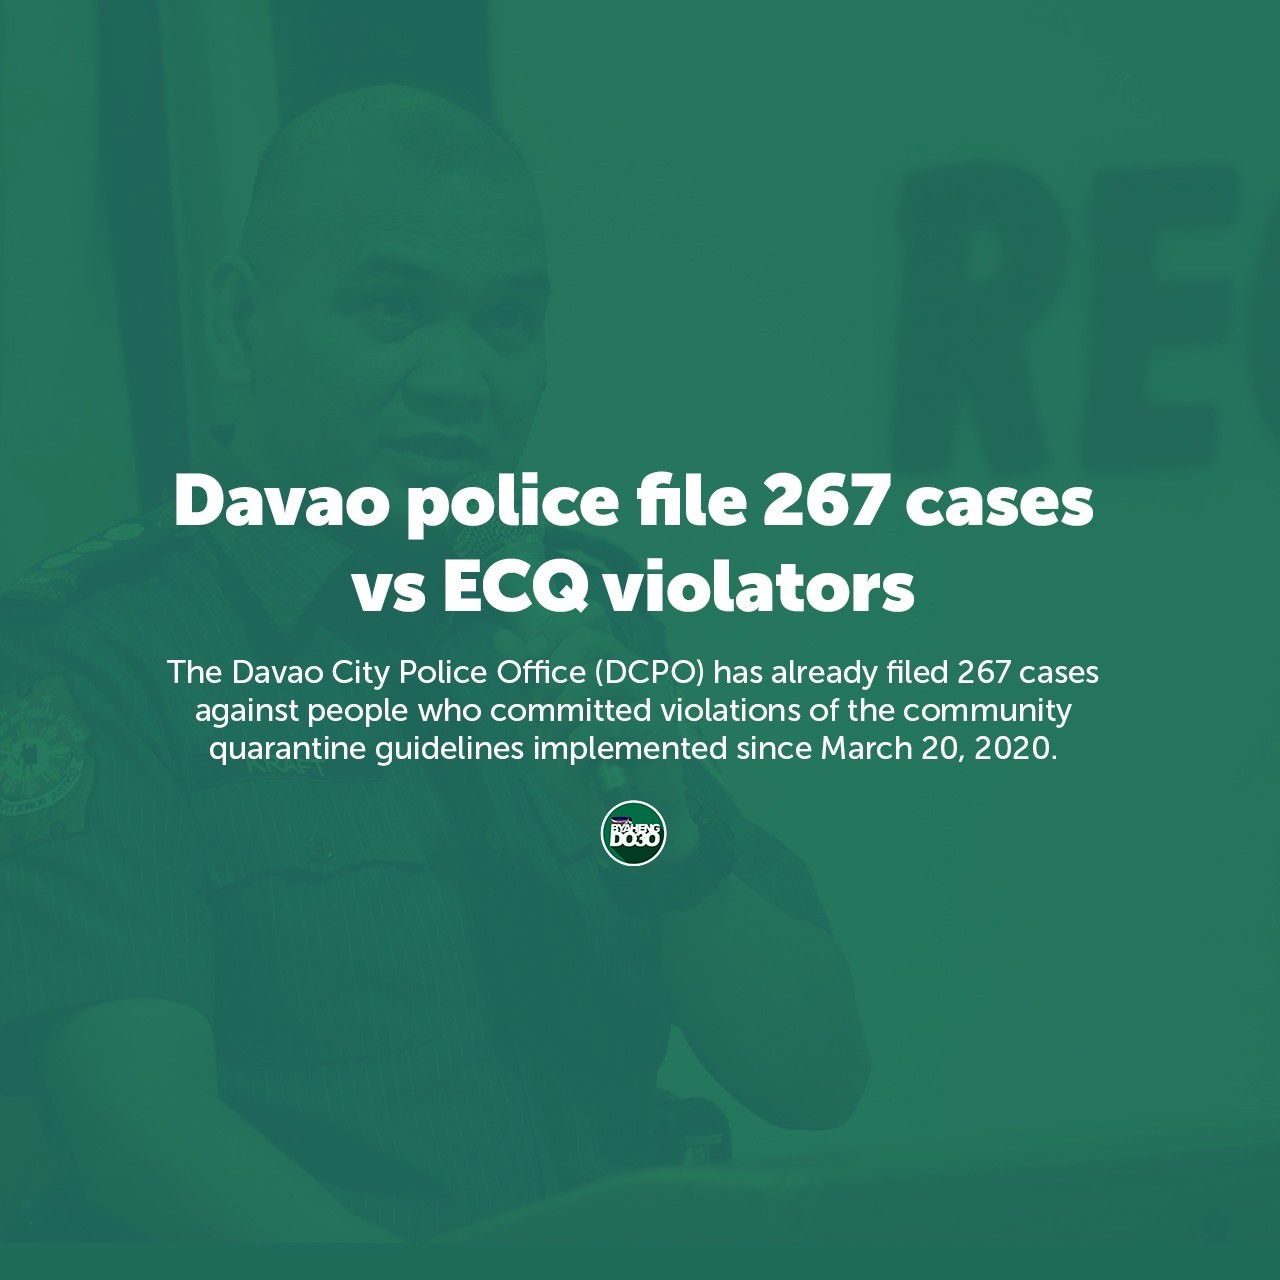 Davao police file 267 cases vs ECQ violators